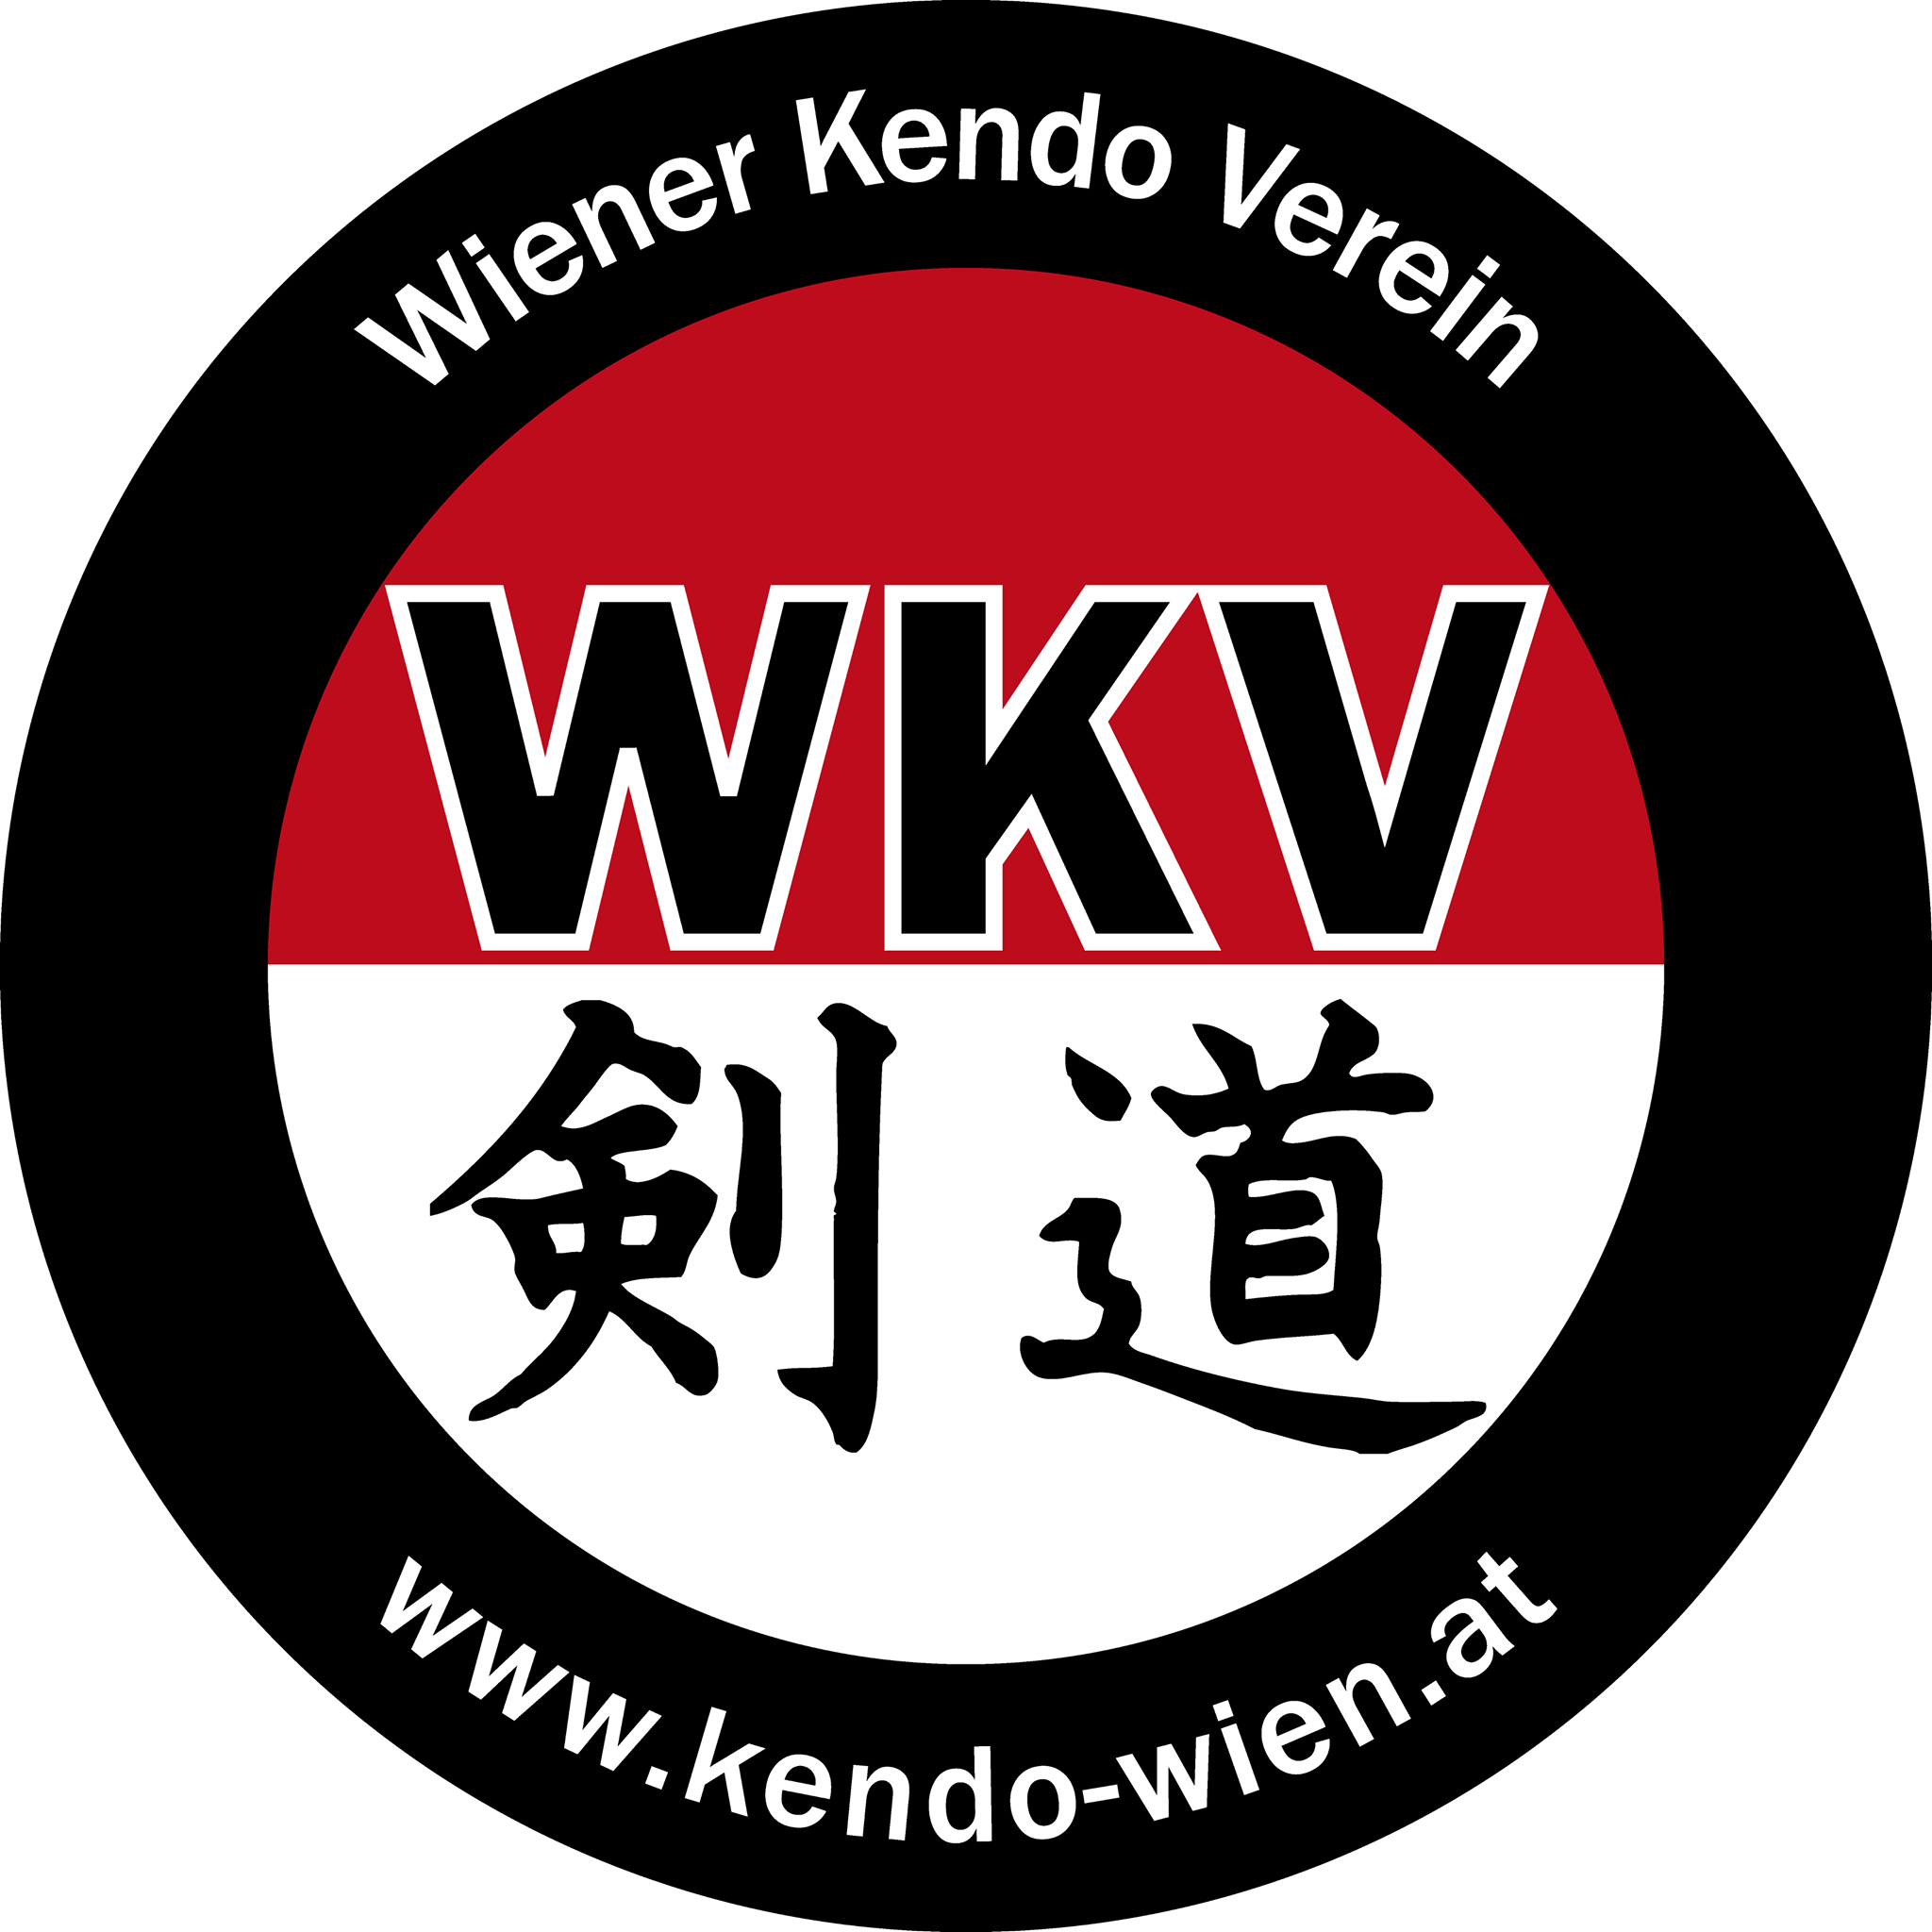 Wiener Kendo Verein